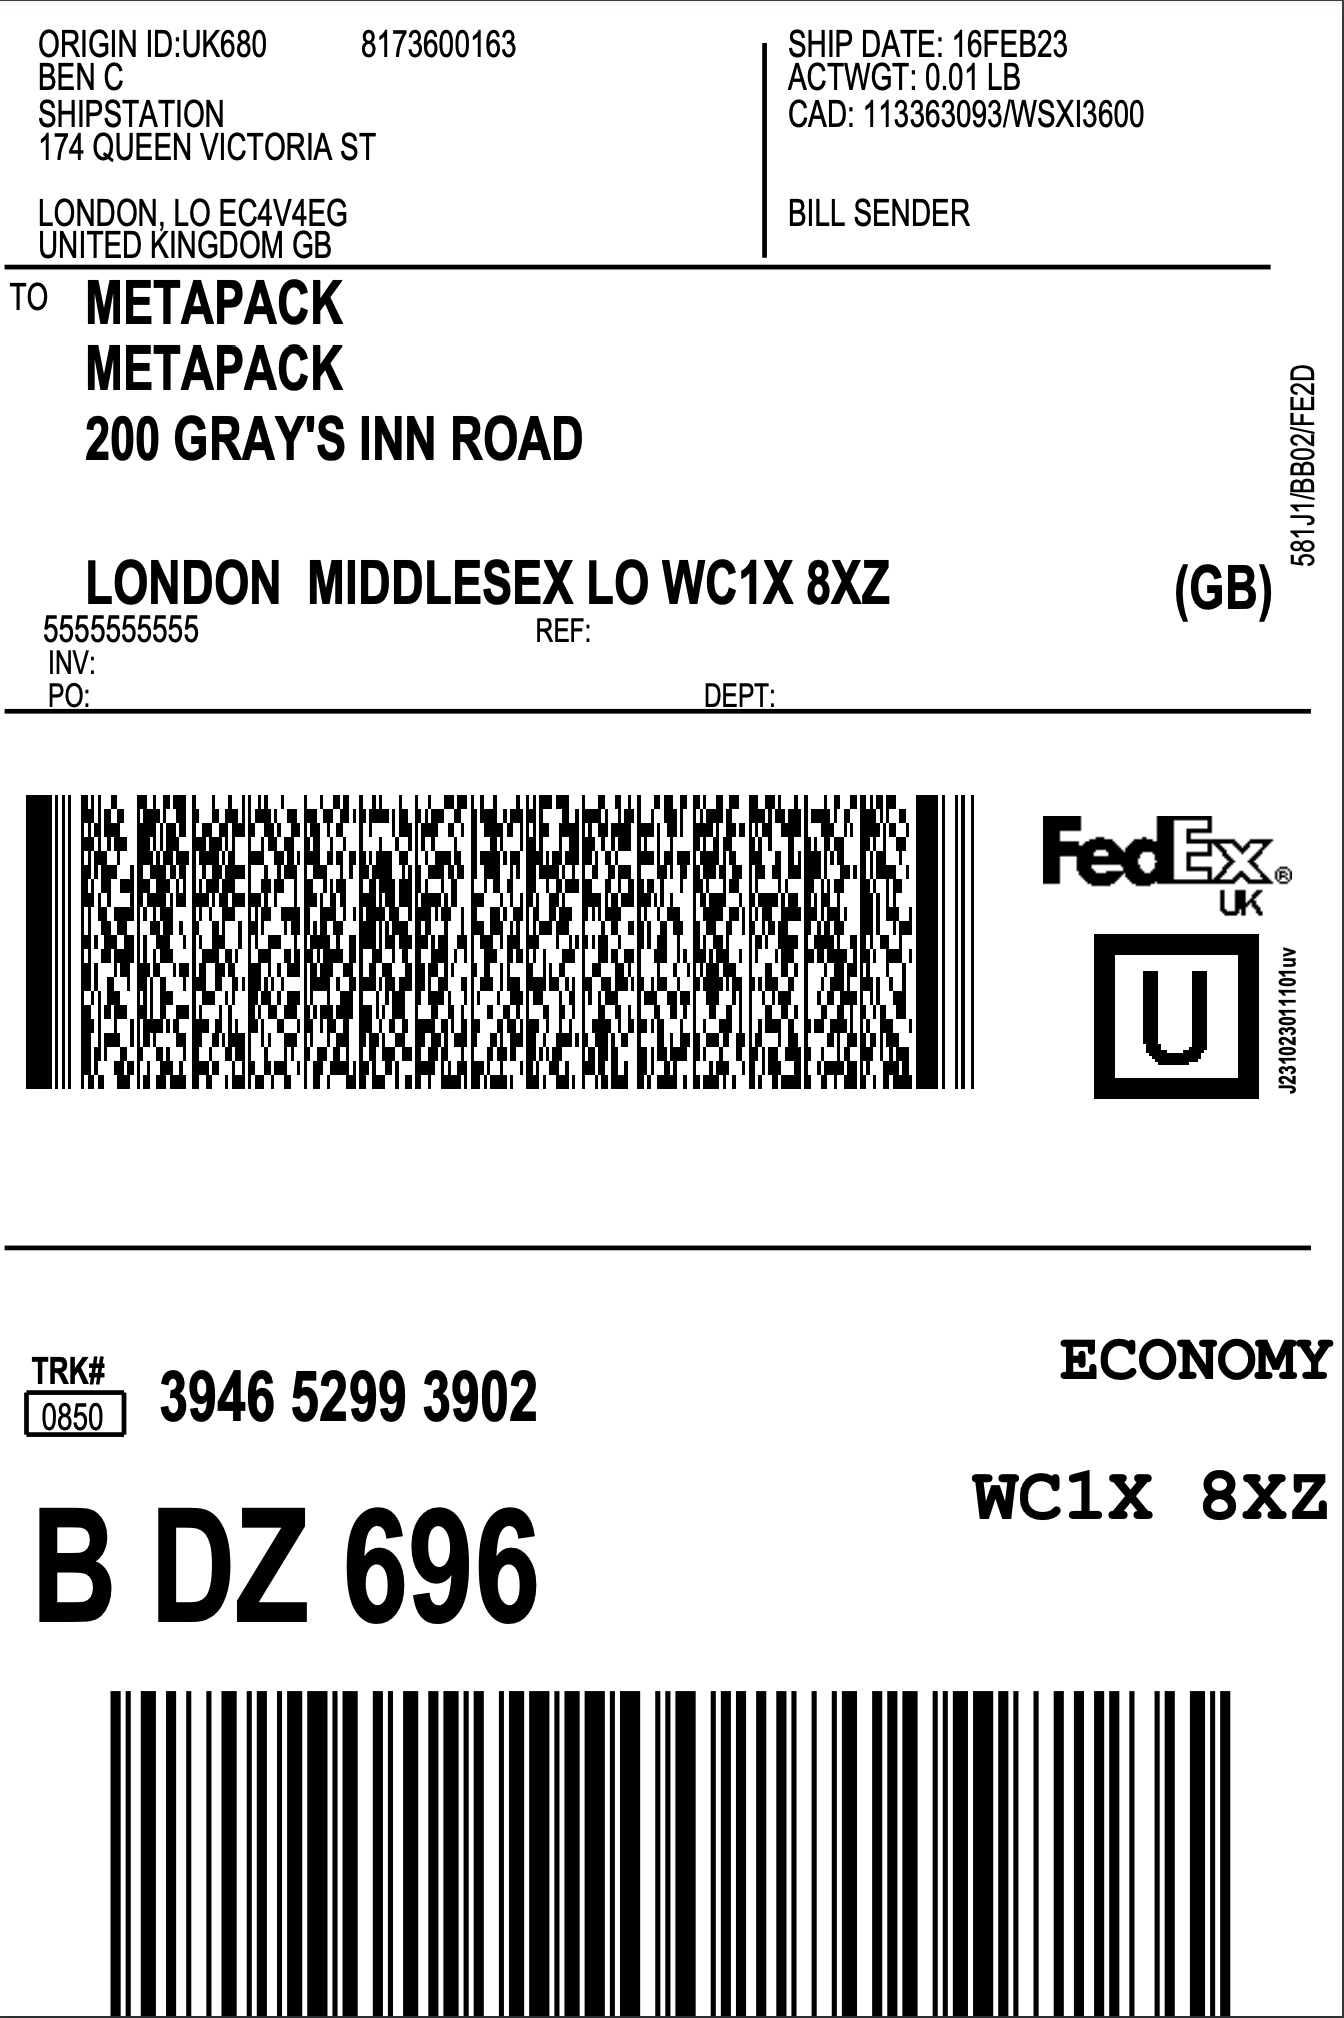 FedEx UK Example Label